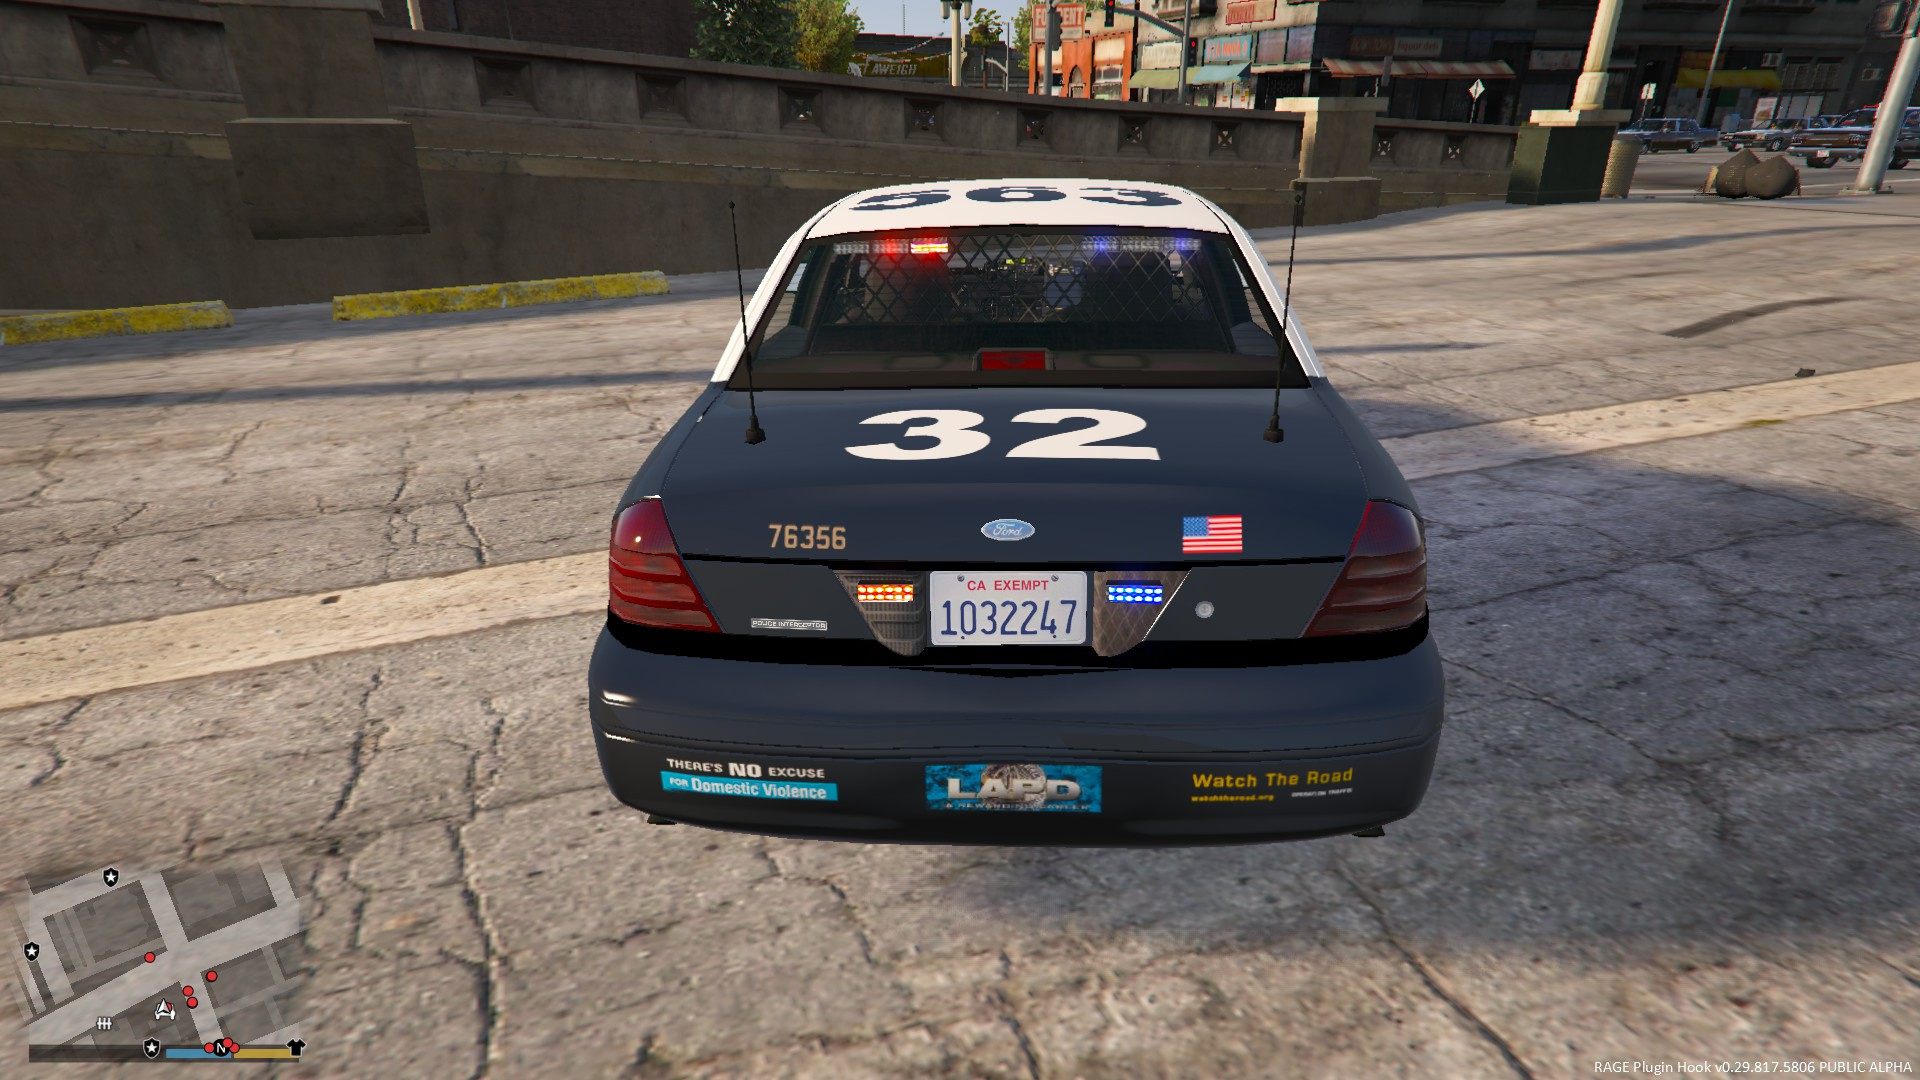 LAPD Slicktop Gang Unit - GTA5-Mods.com